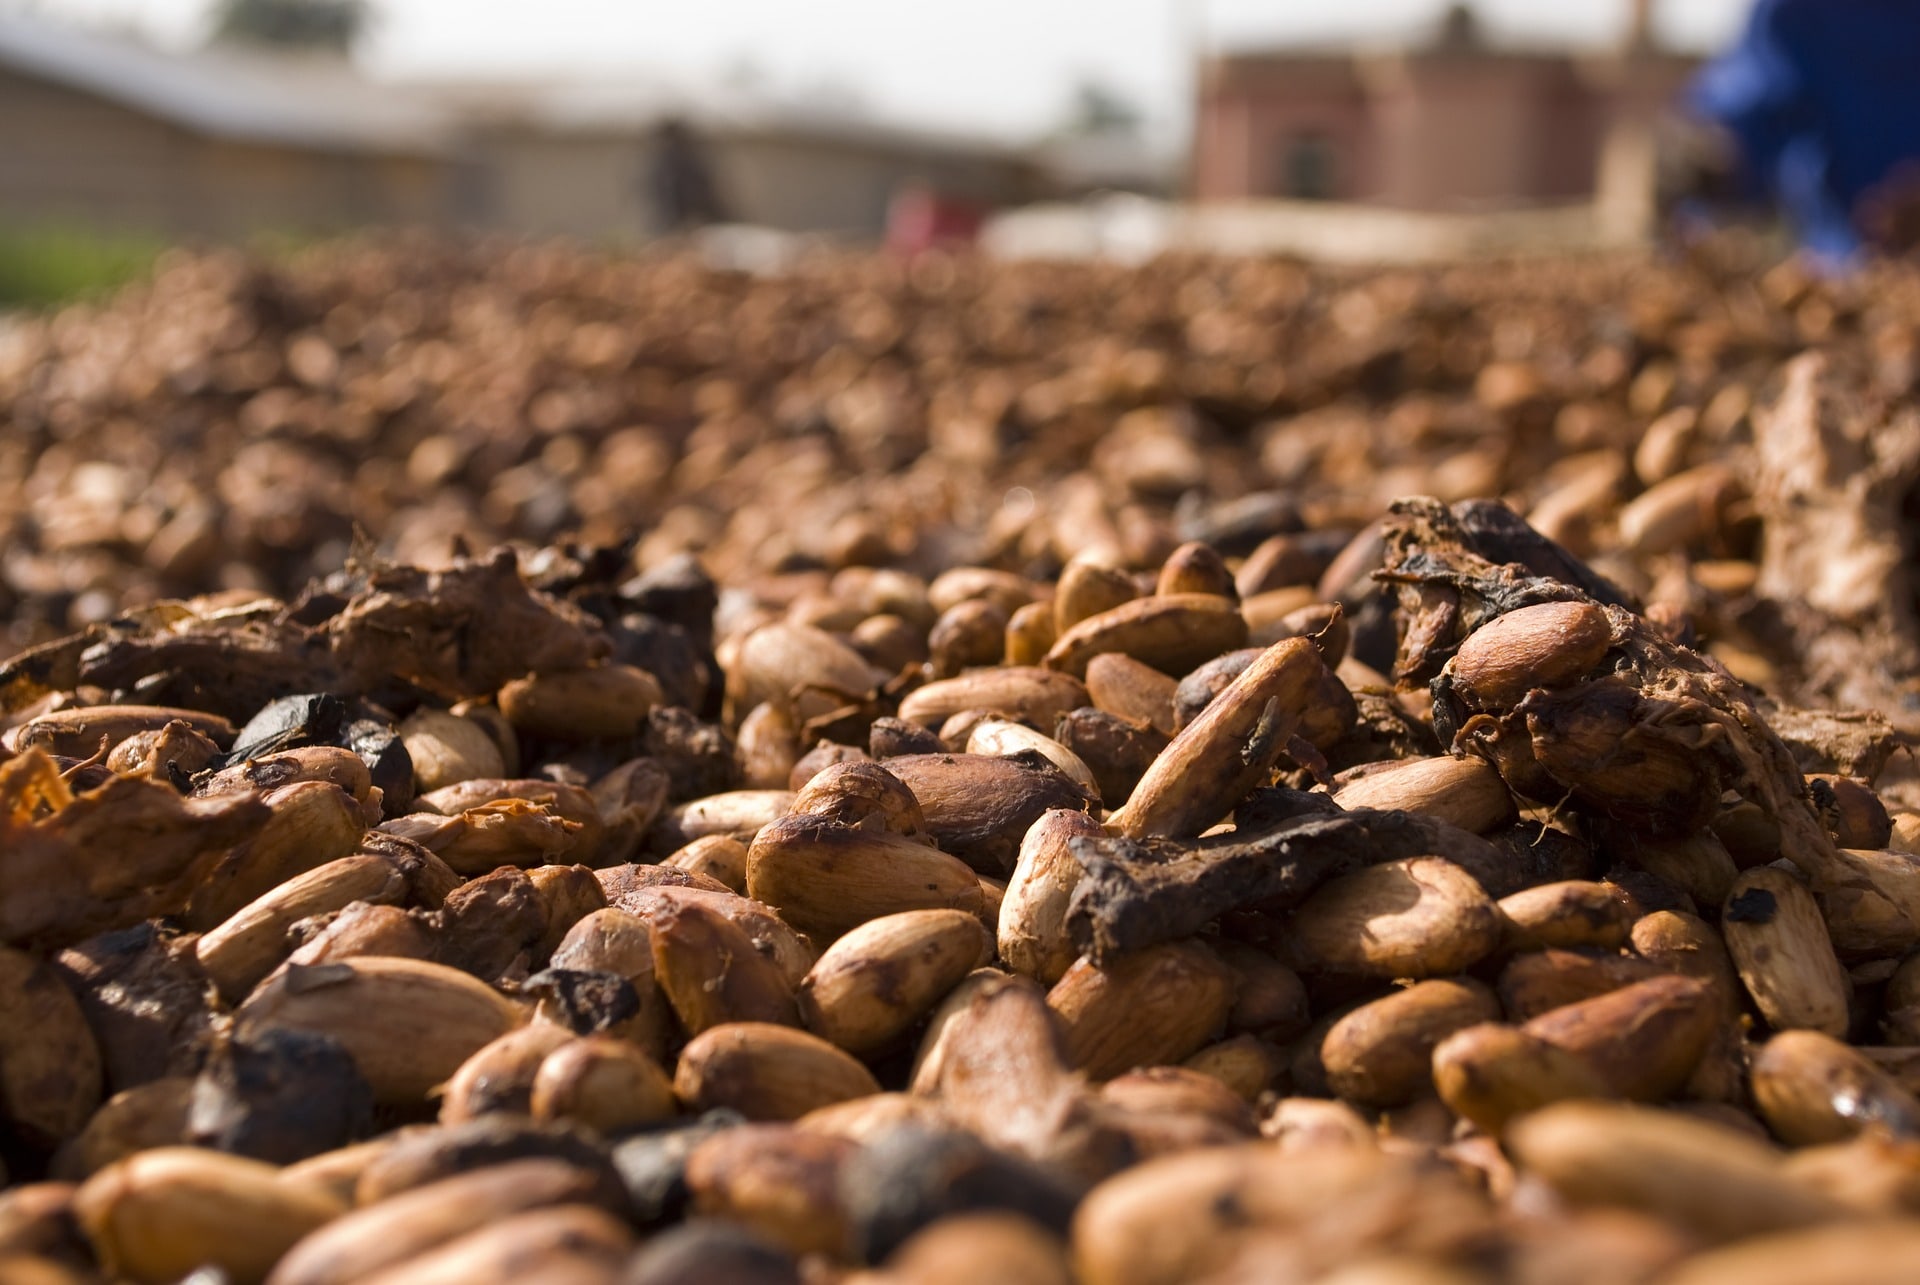 Qué son y para qué sirven los Nibs de Cacao | Receta de gachas de quinoa